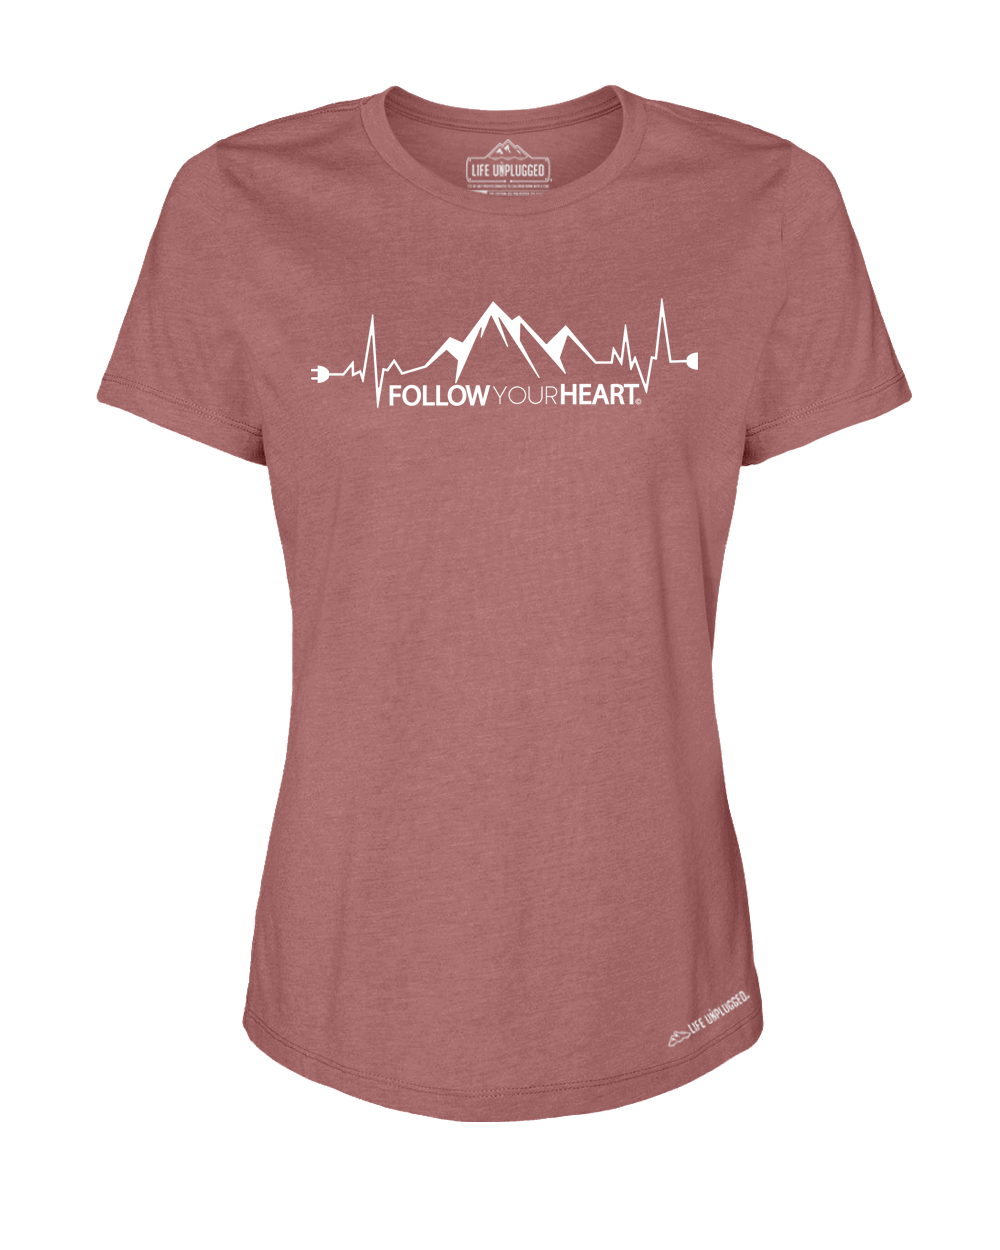 Follow your Heart Premium Women's Relaxed Fit Polyblend T-Shirt